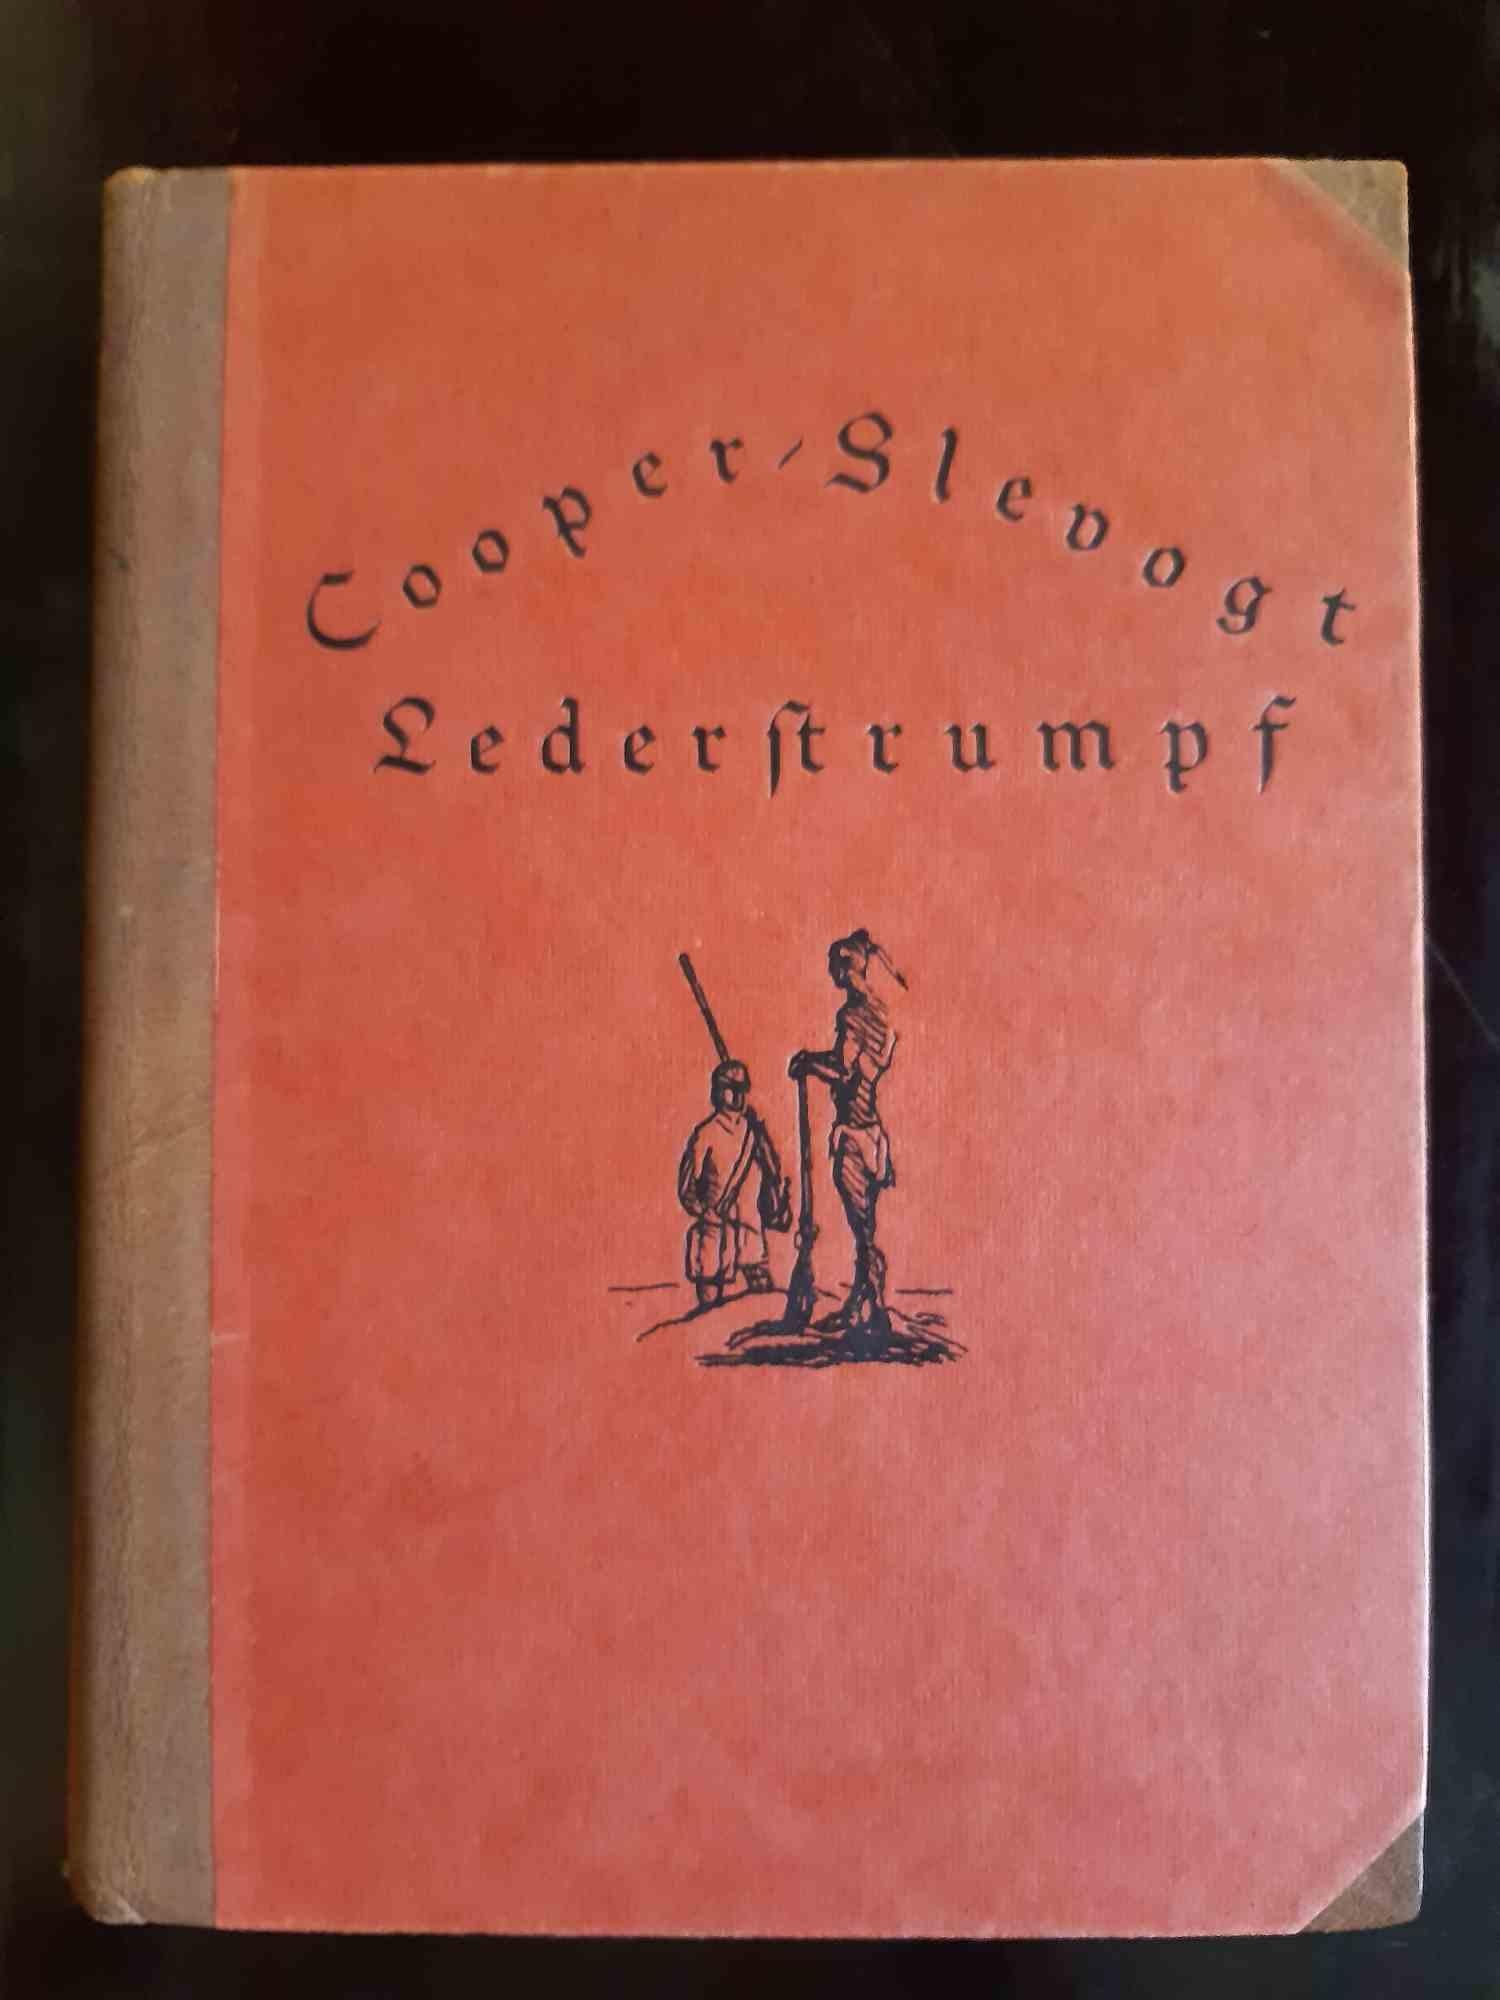 Lederstrumpf - Original Rare Book Illustrated by Max Slevogt - 1928